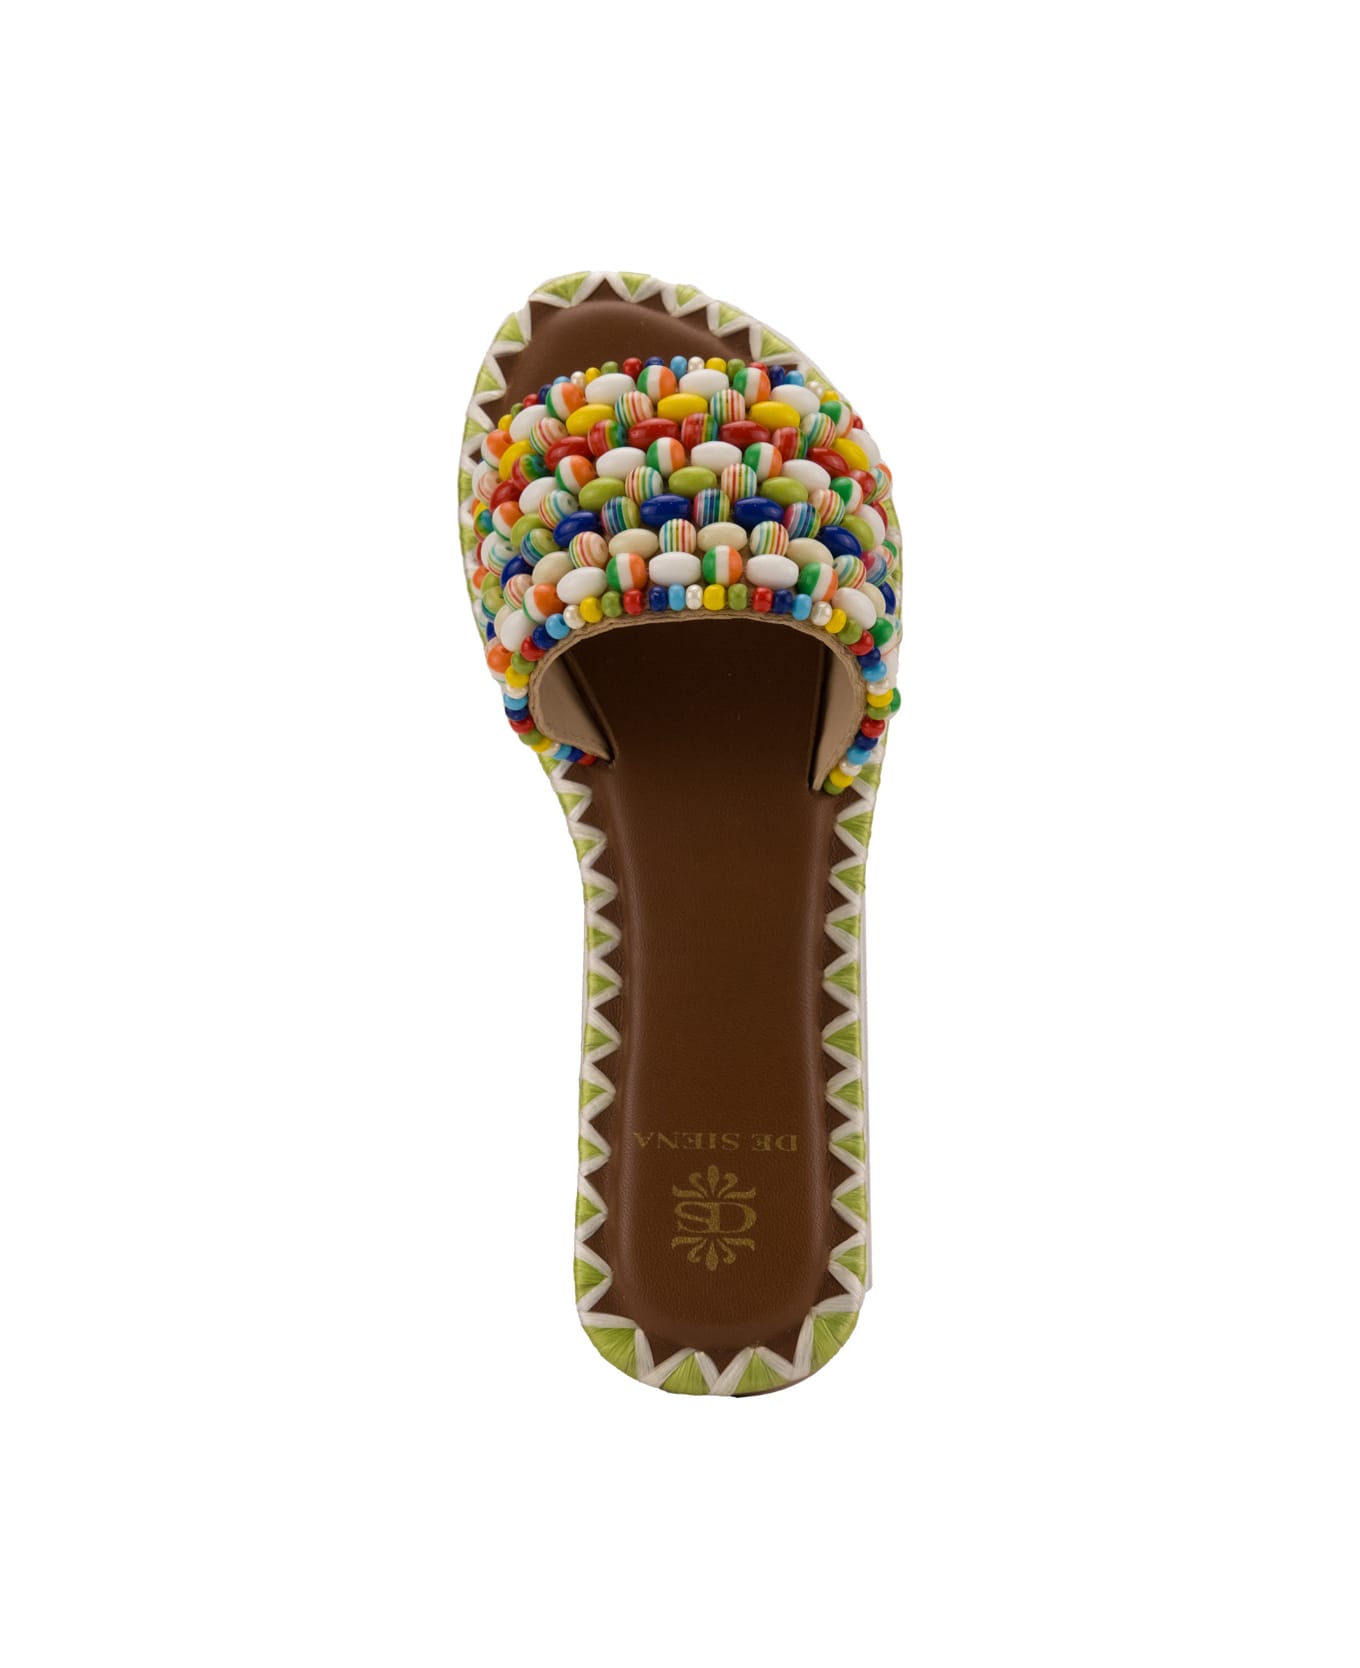 De Siena Belinda Sandals With Beads - Multicolor